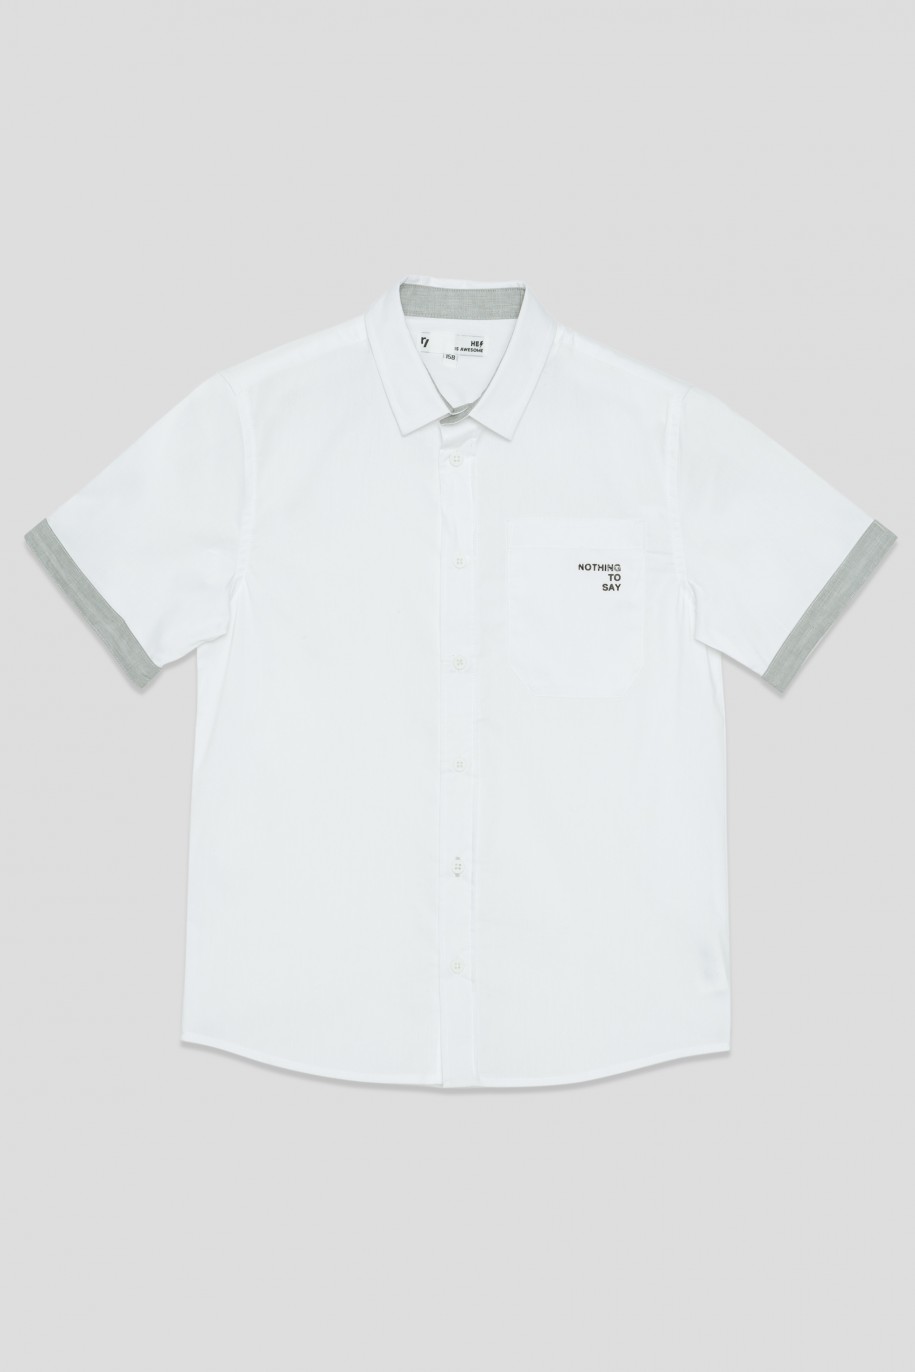 Biała koszula z krótkim rękawem i ozdobnymi mankietami dla chłopaka - 33847